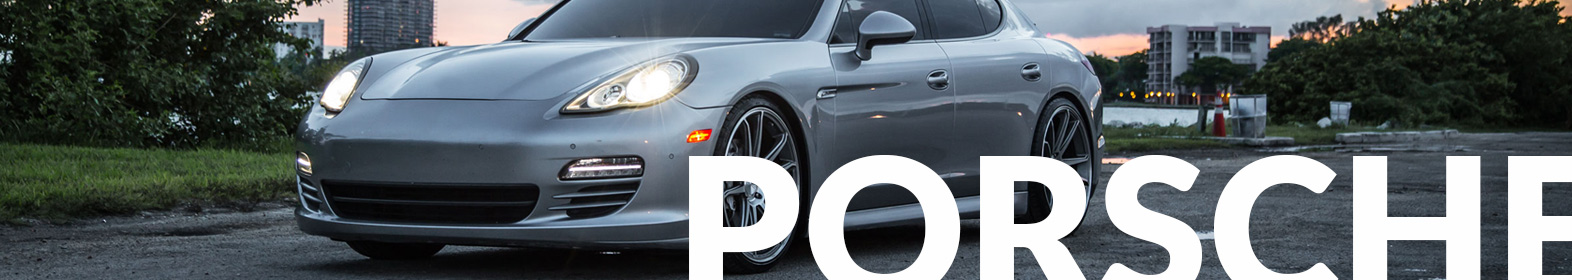 Porsche Banner | Yates Collision